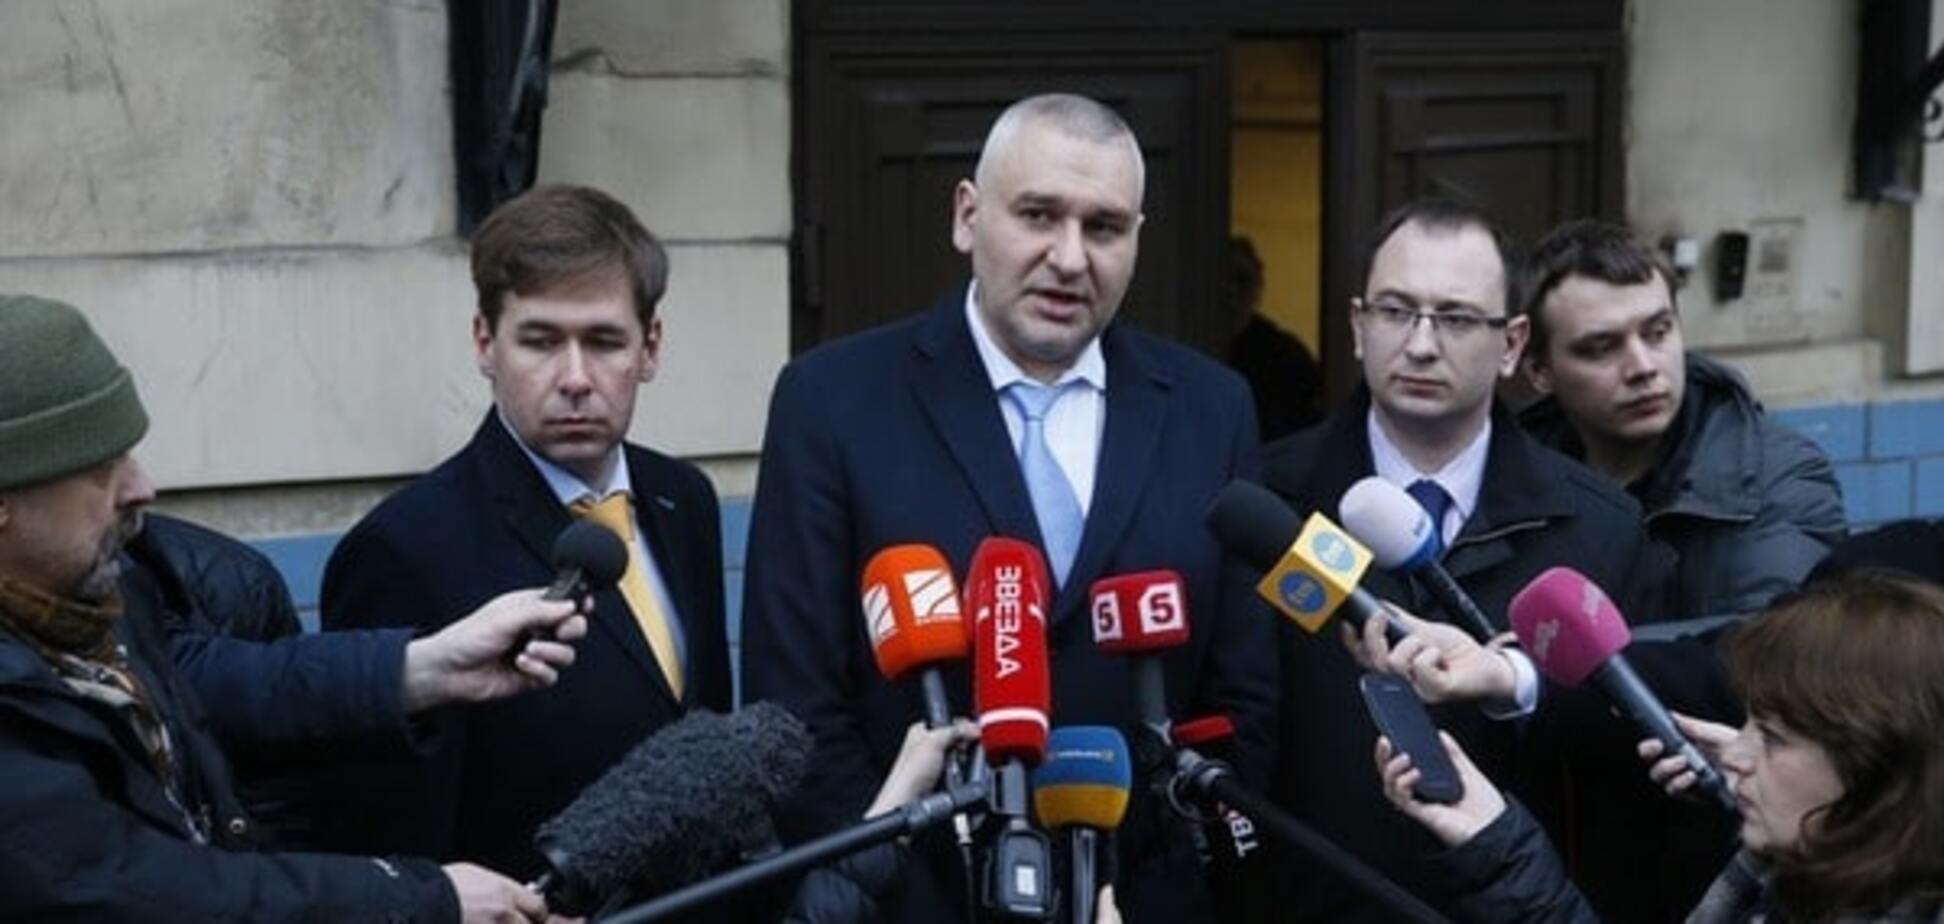 Суд повесился, обвинение облажалось – адвокаты о доказательствах по делу Савченко